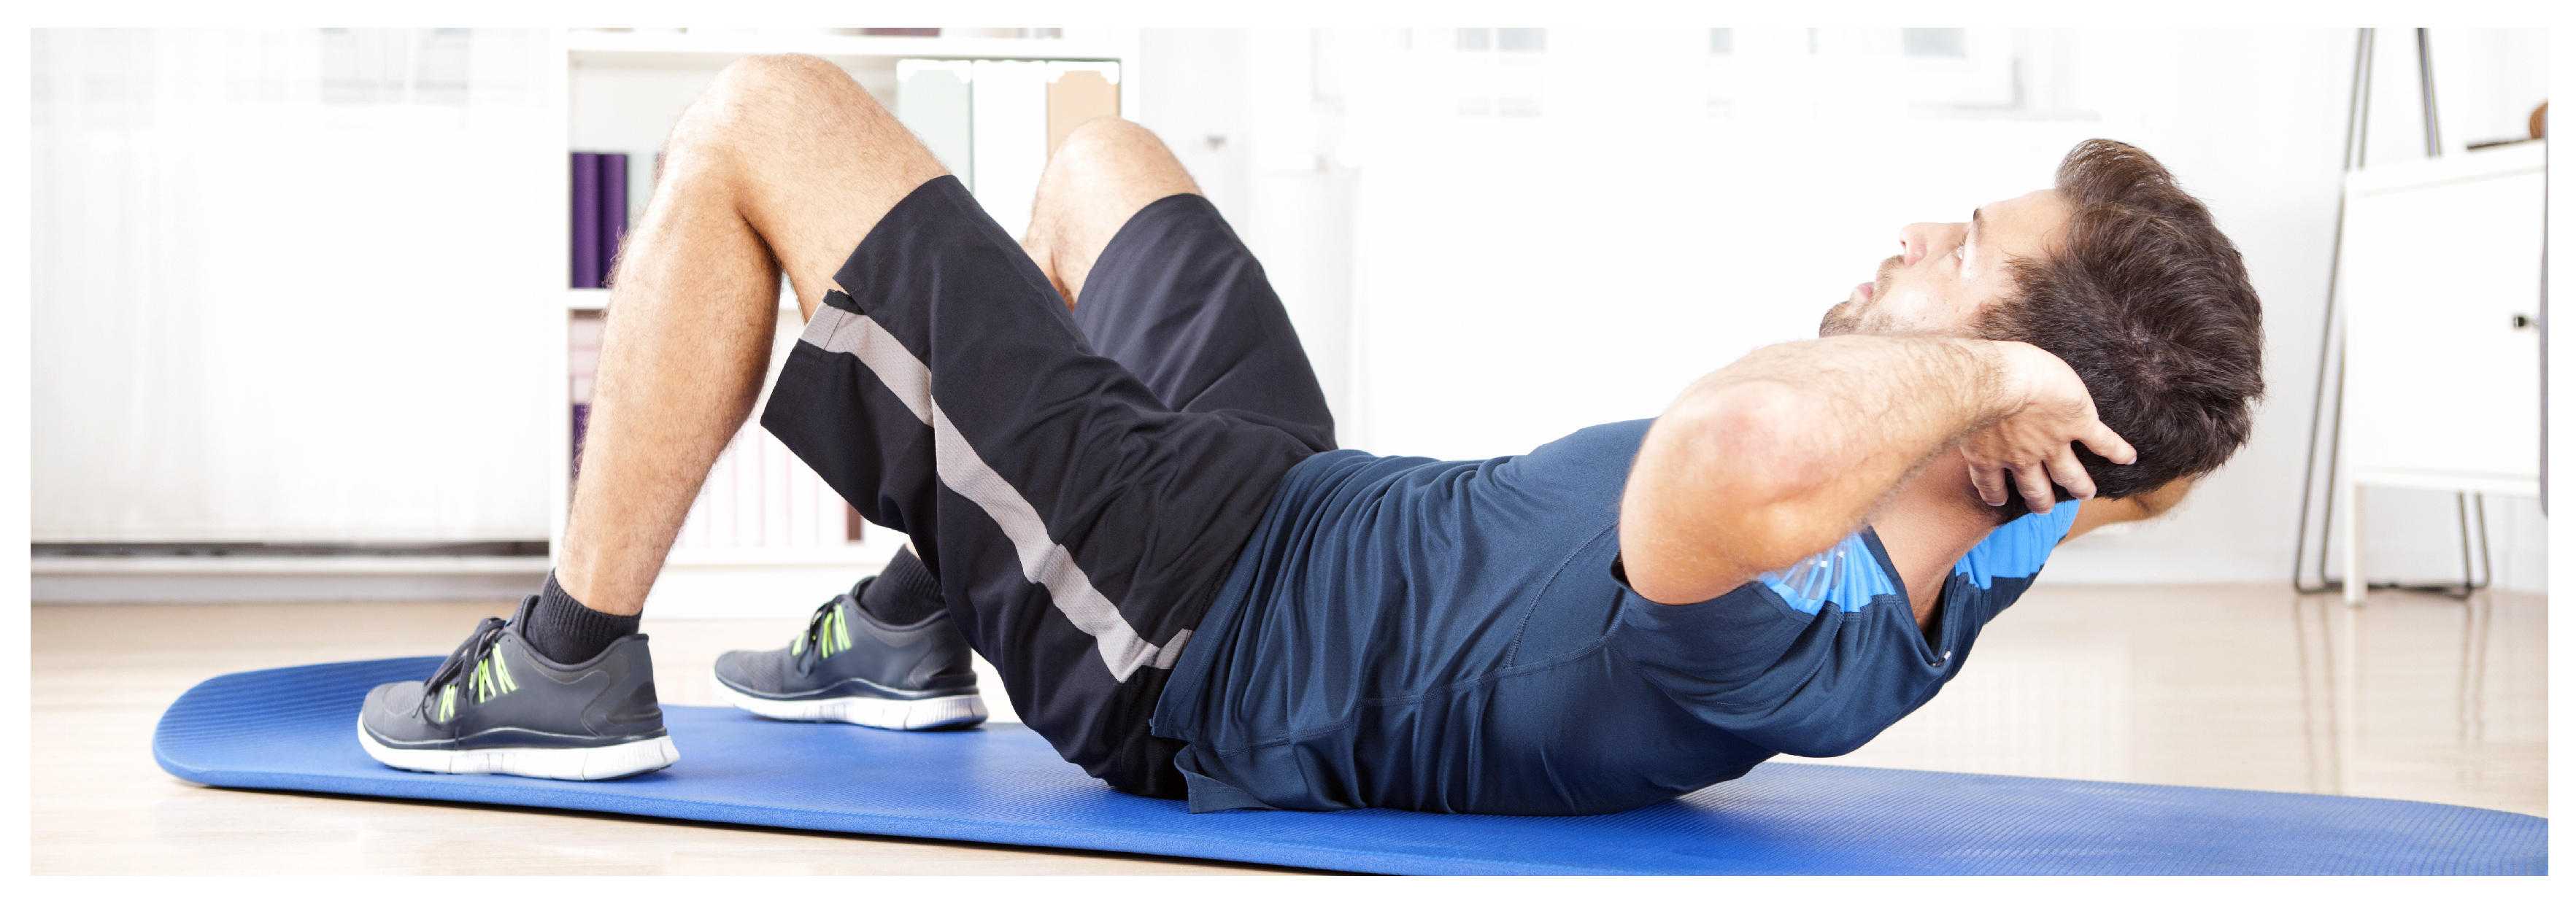 Фитнес дома упражнения - комплекс физических упражнений для домашнего фитнеса